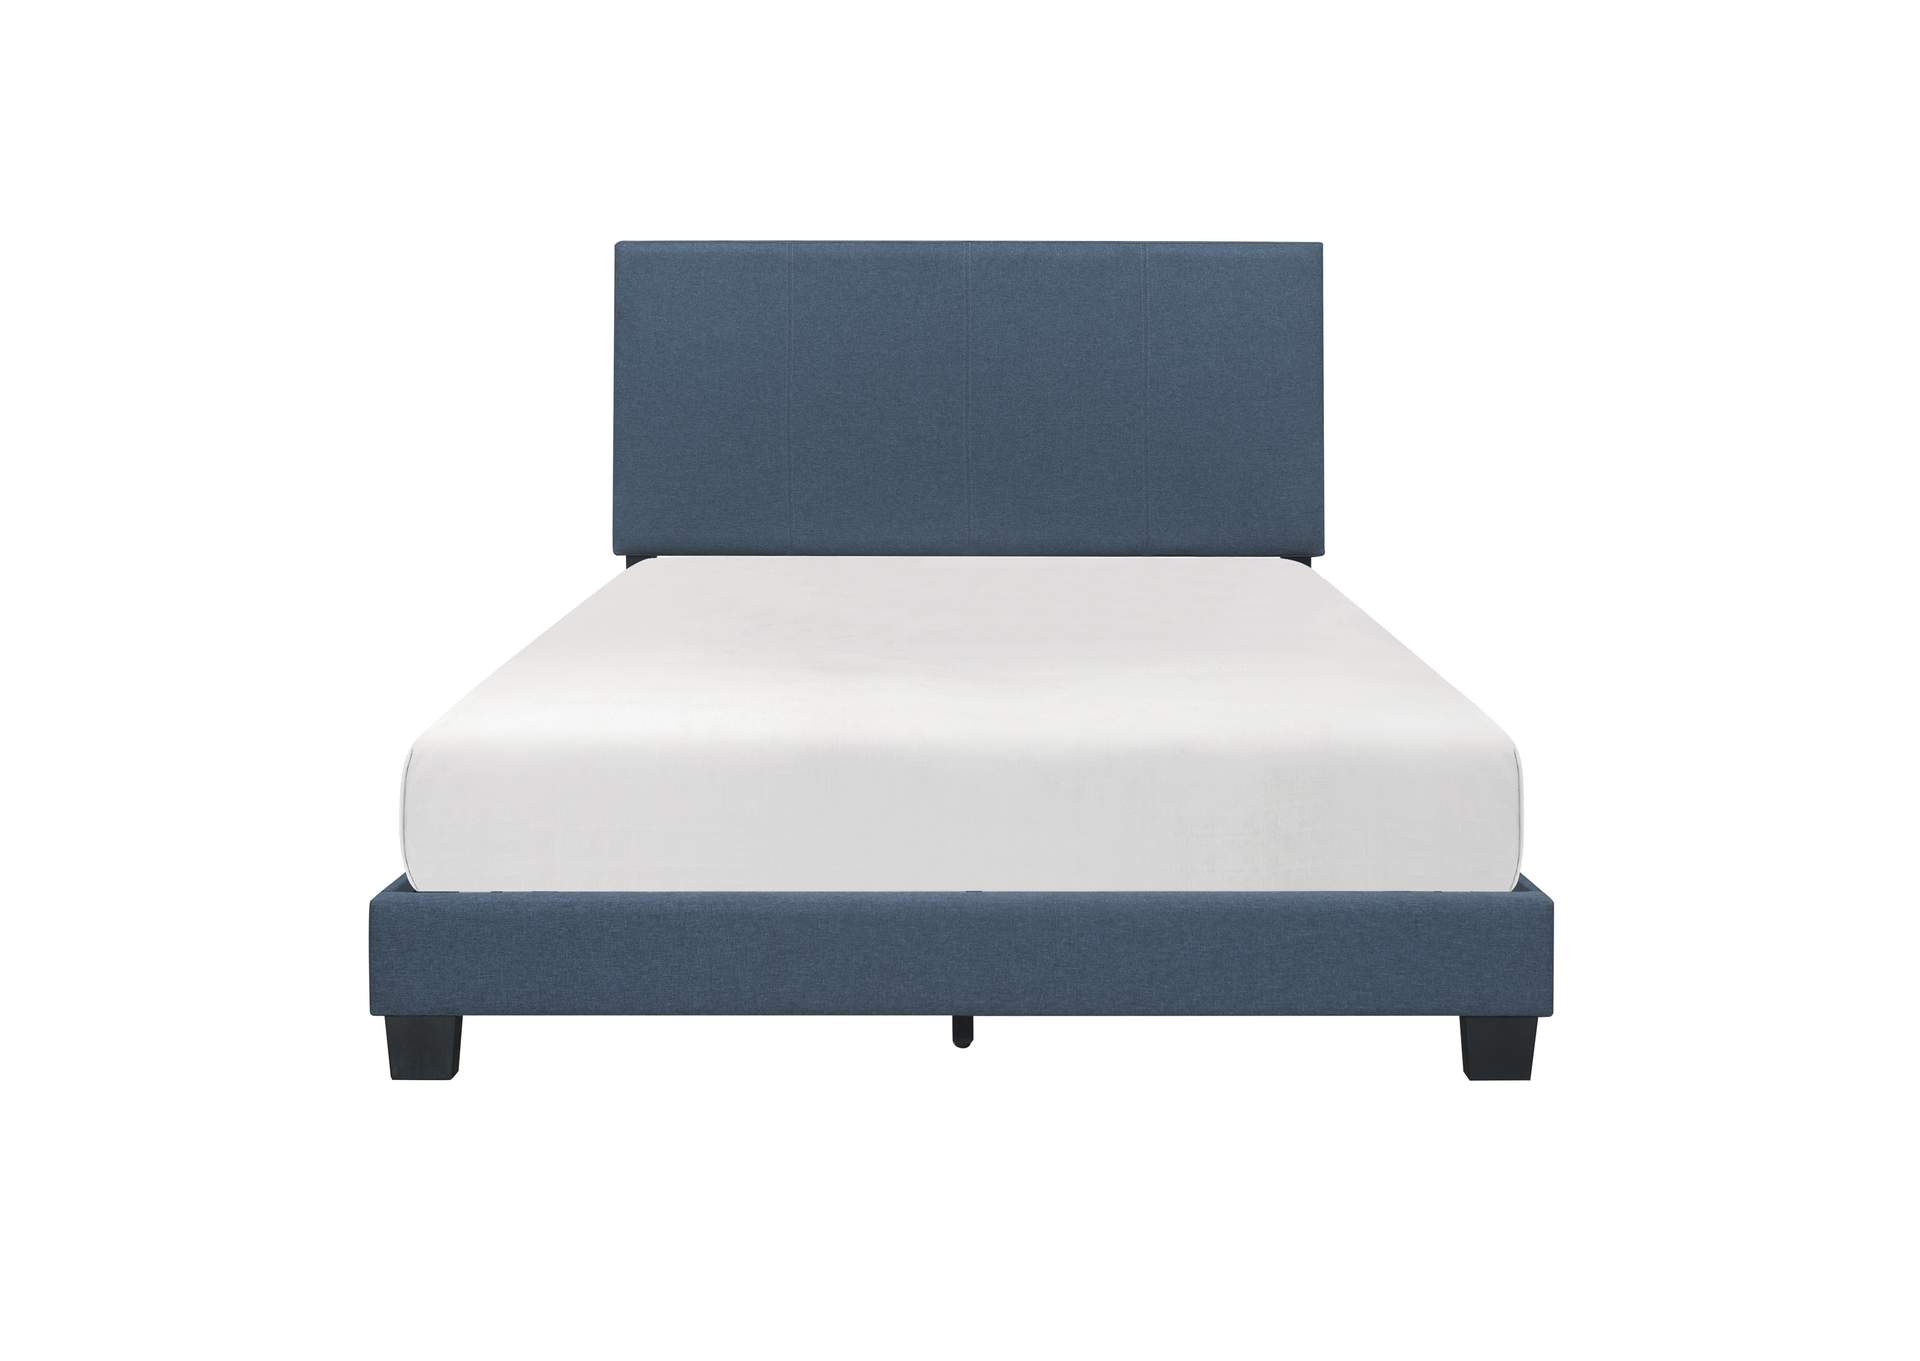 Nolens Blue Full Bed,Homelegance